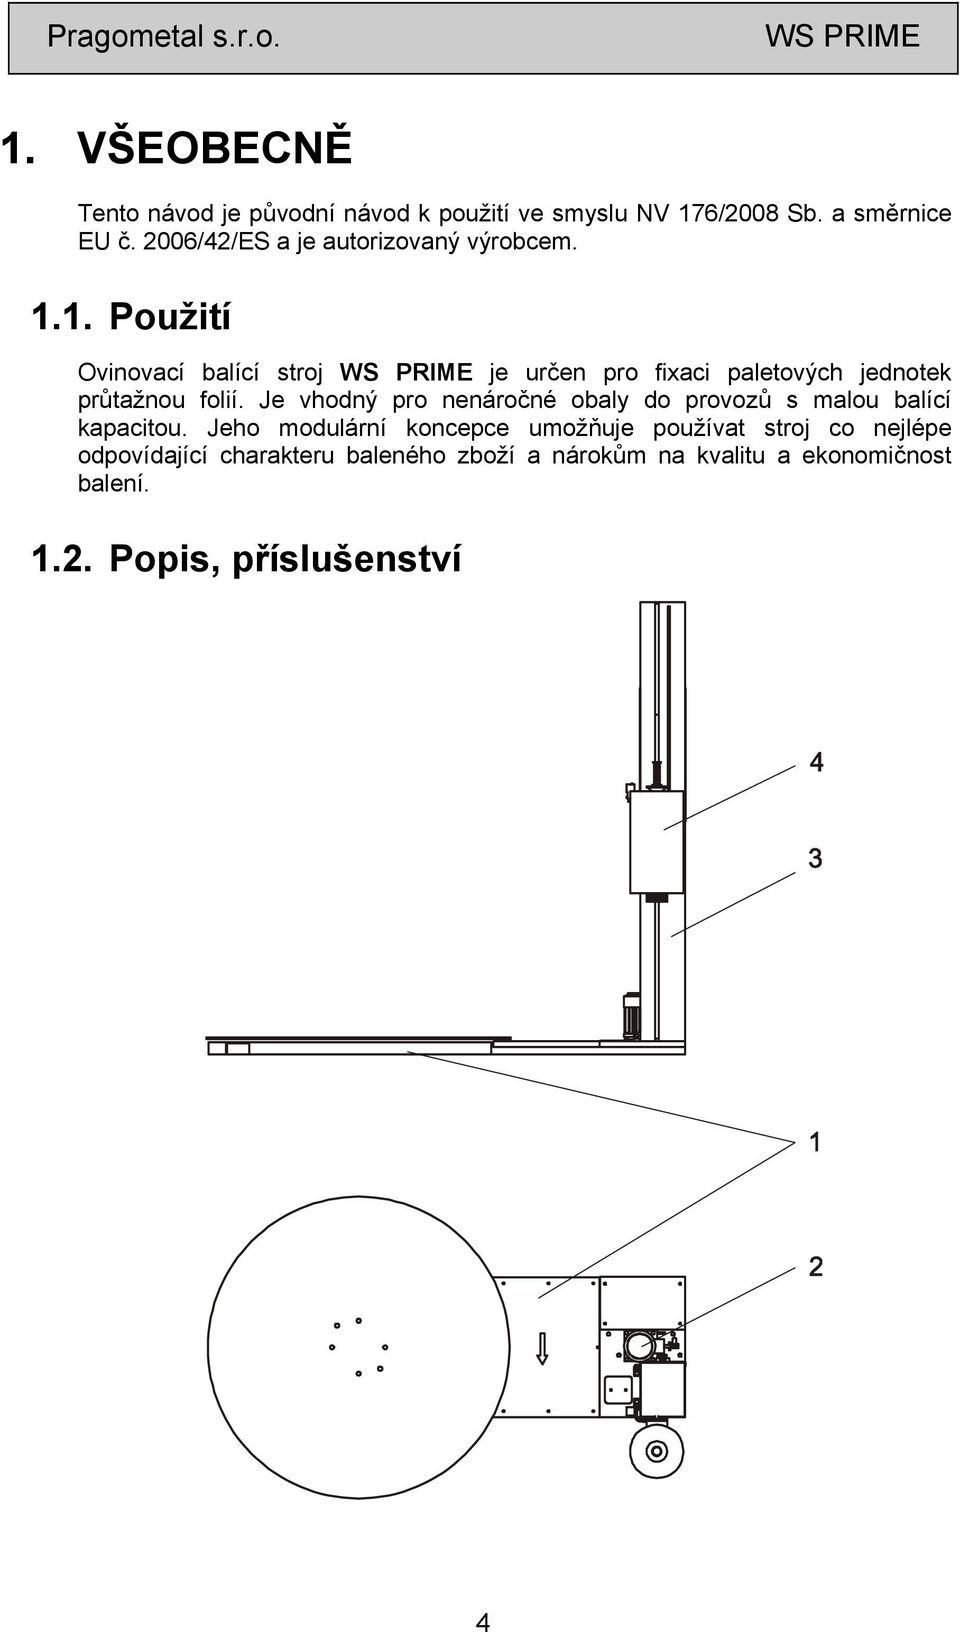 1. Použití Ovinovací balící stroj je určen pro fixaci paletových jednotek průtažnou folií.